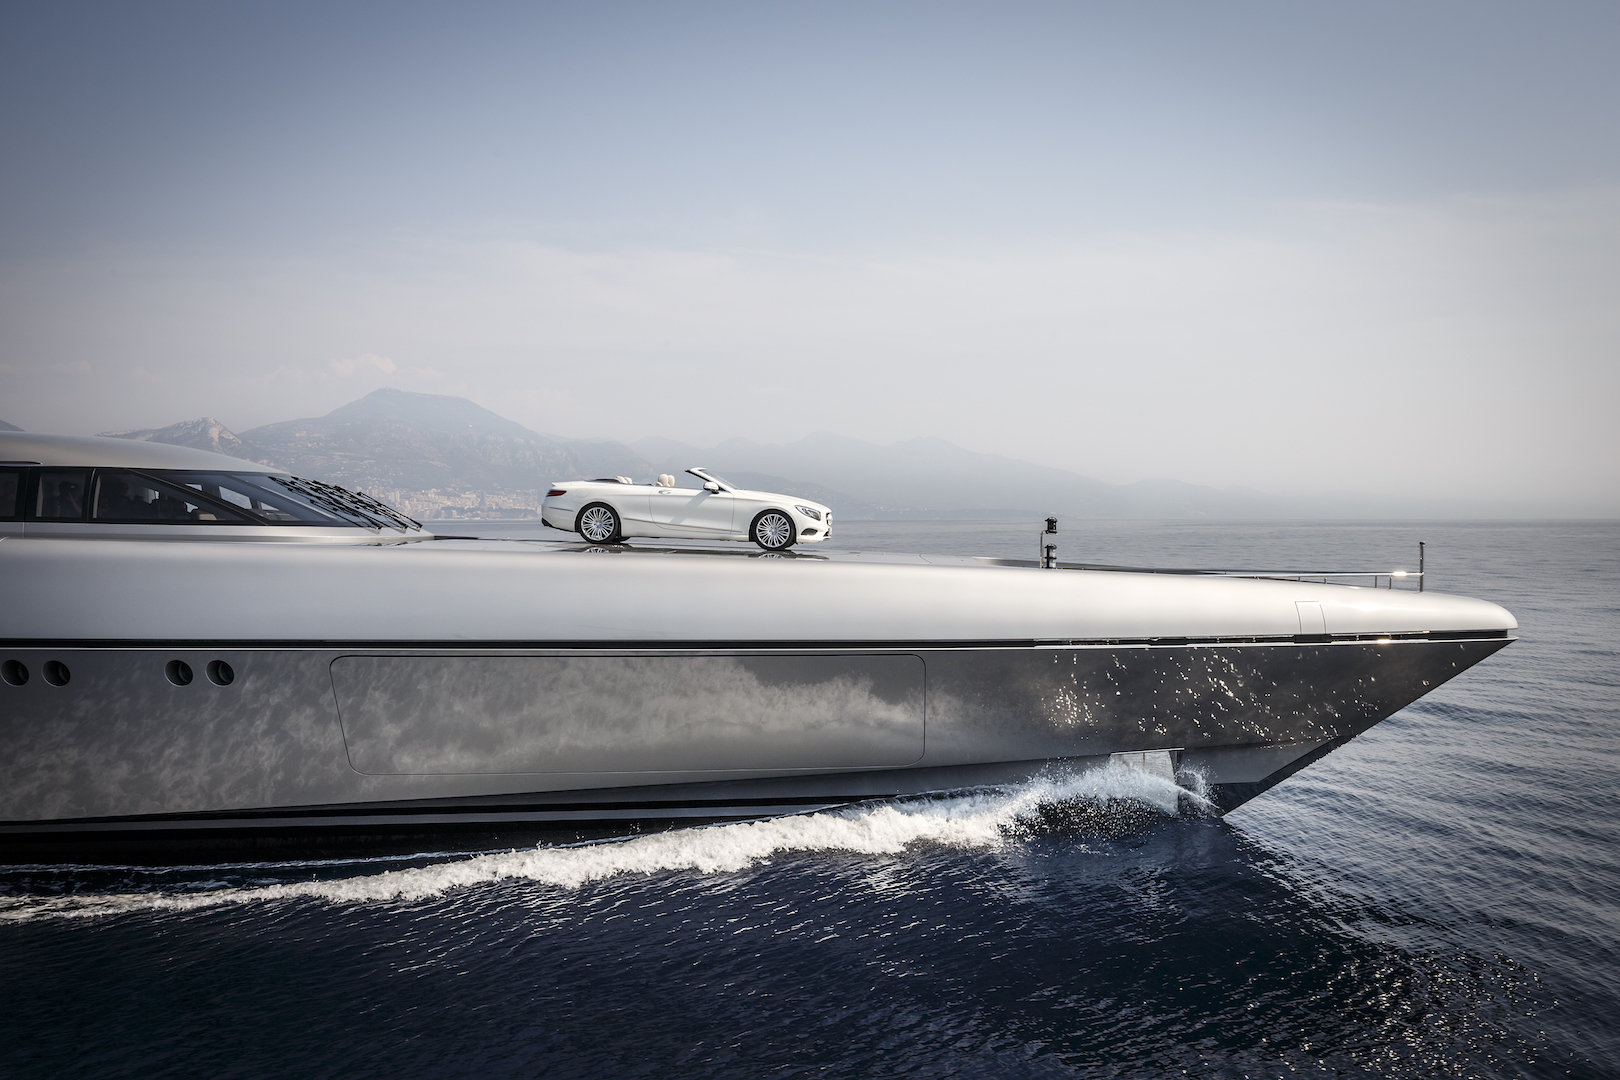 Mercedes-Benz Style previews Silver Arrows motor yacht - Car Body Design